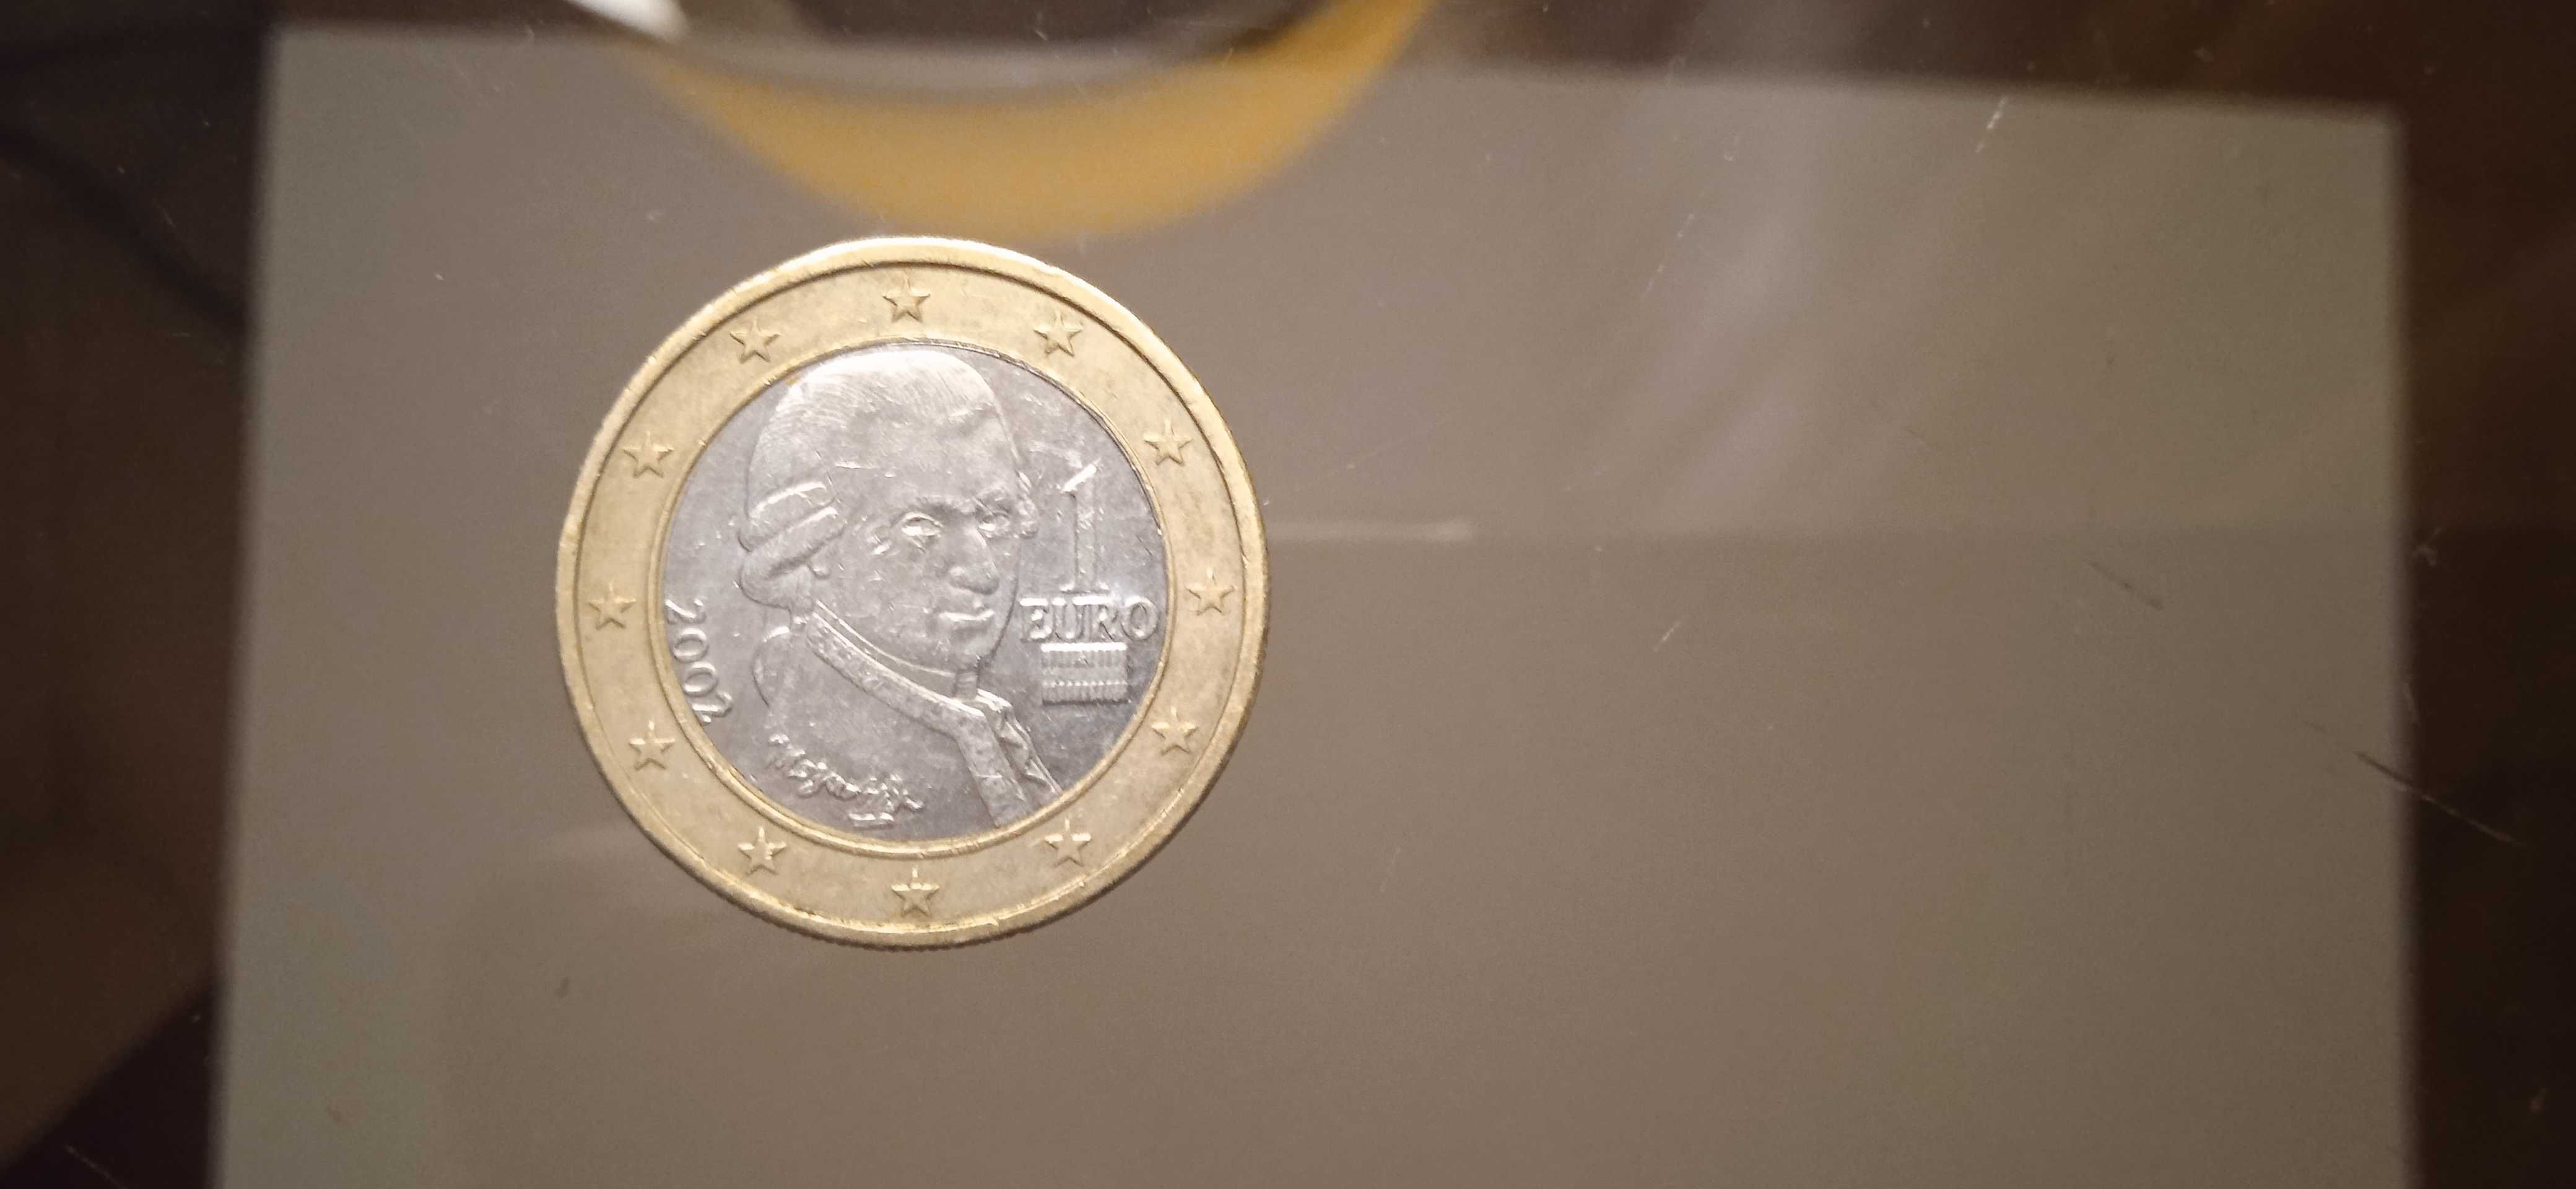 Vendo moeda 1 euro Austria 2002